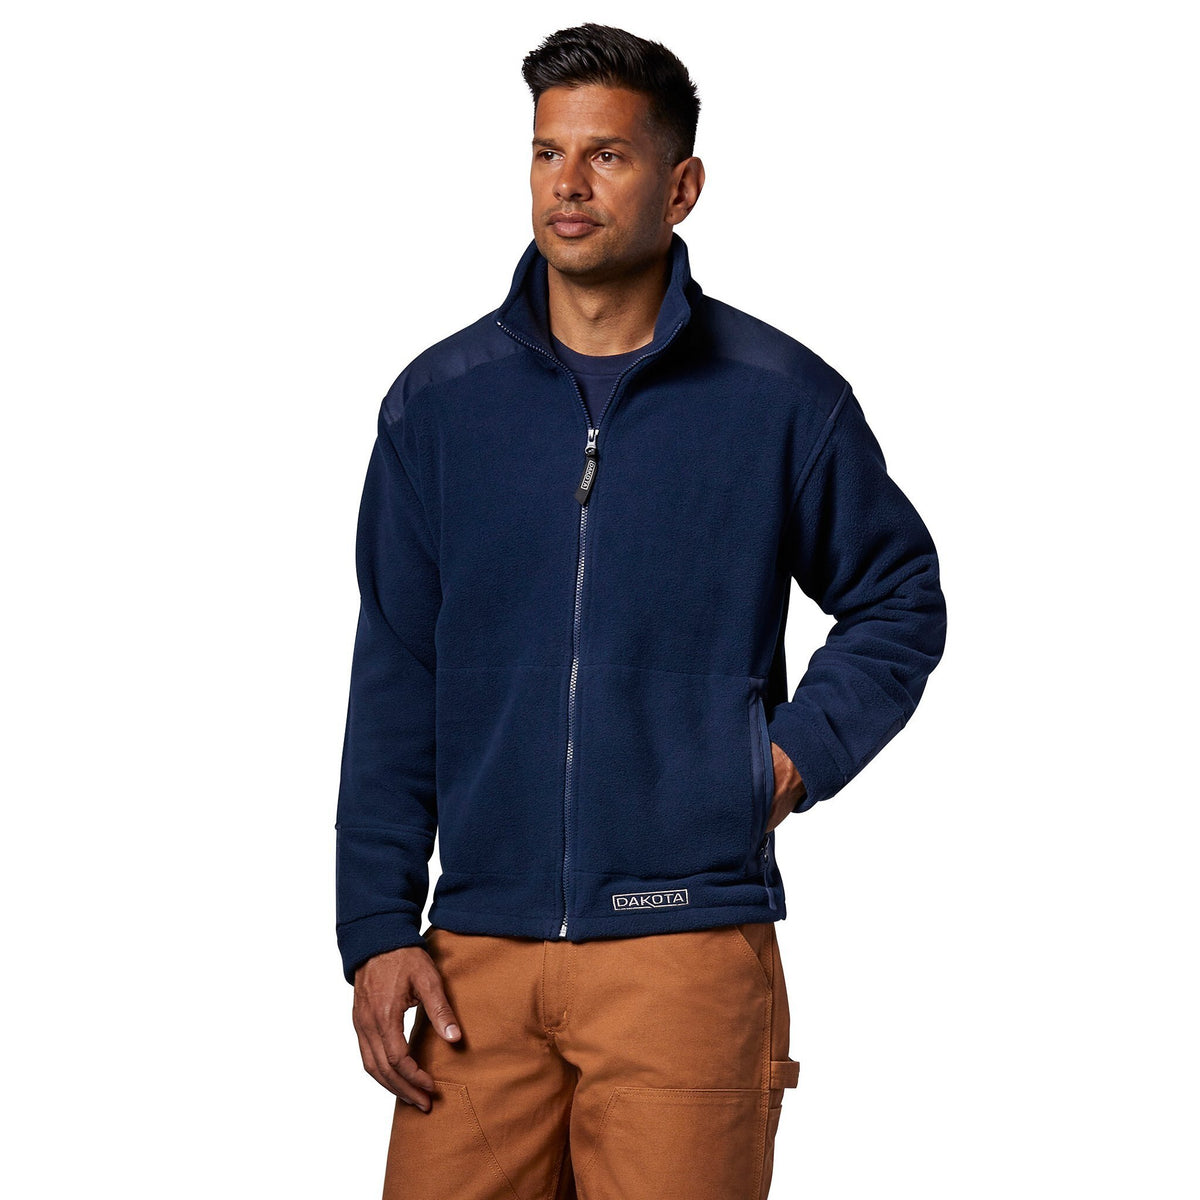 Men's Soft Fleece Work Jacket/Sweatshirt With Full Zipper - Navy | Mark's